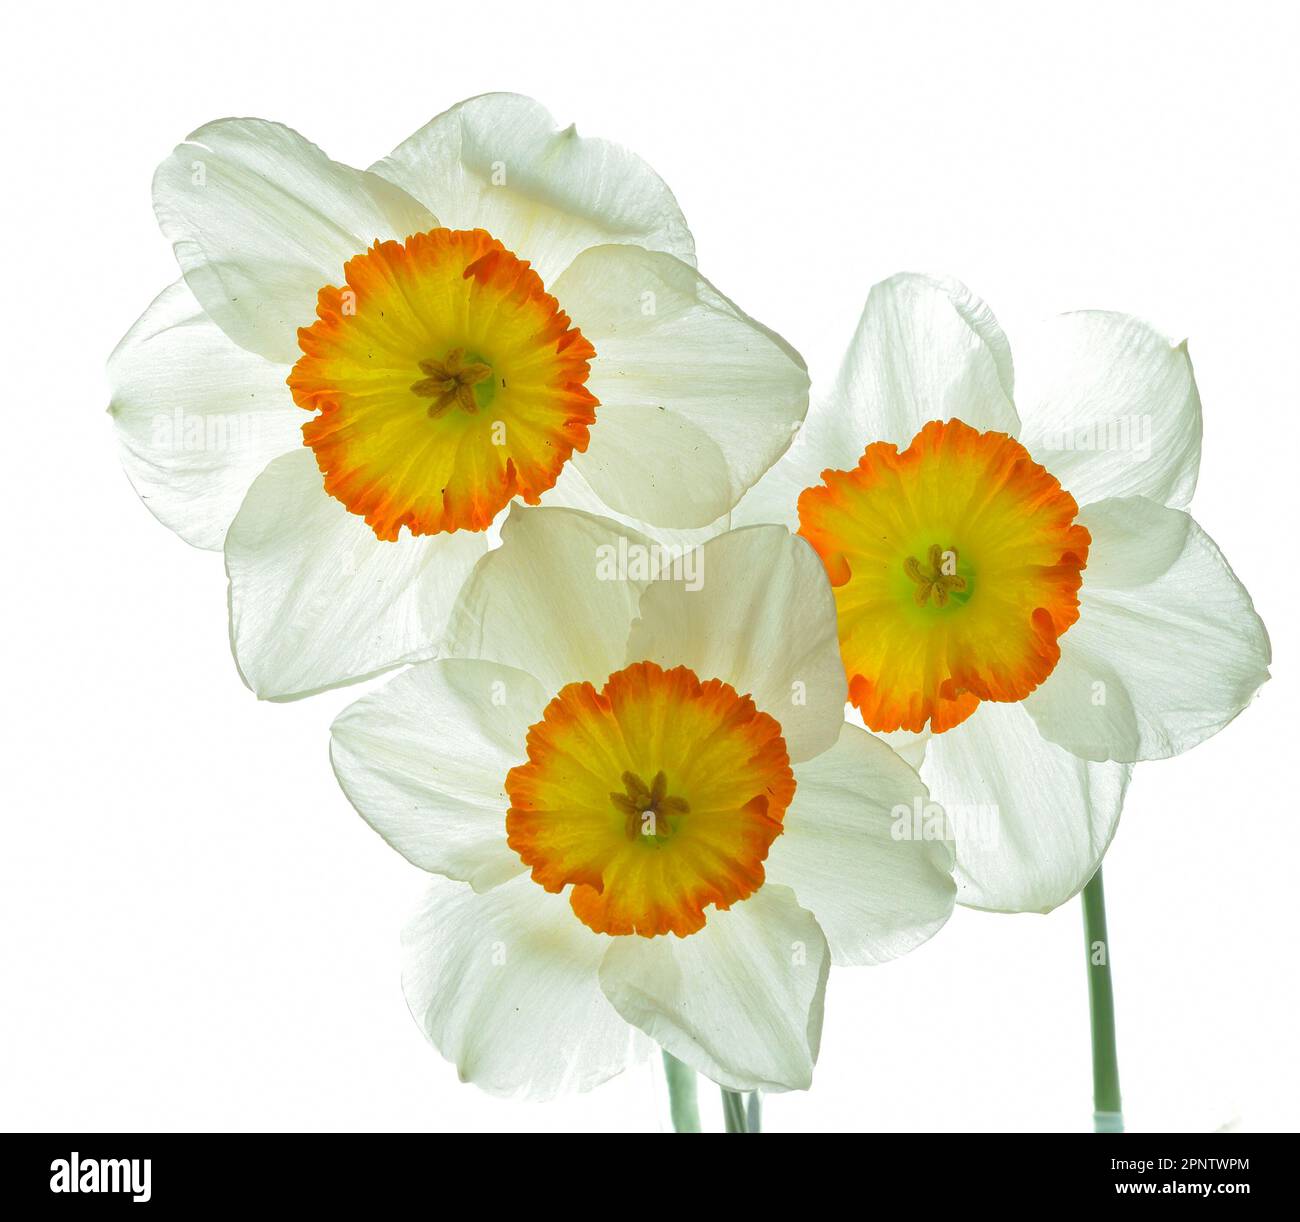 Tre narcisi bianche con centri gialli arancioni retroilluminati su sfondo bianco che conferiscono ai petali un aspetto traslucido. Foto Stock